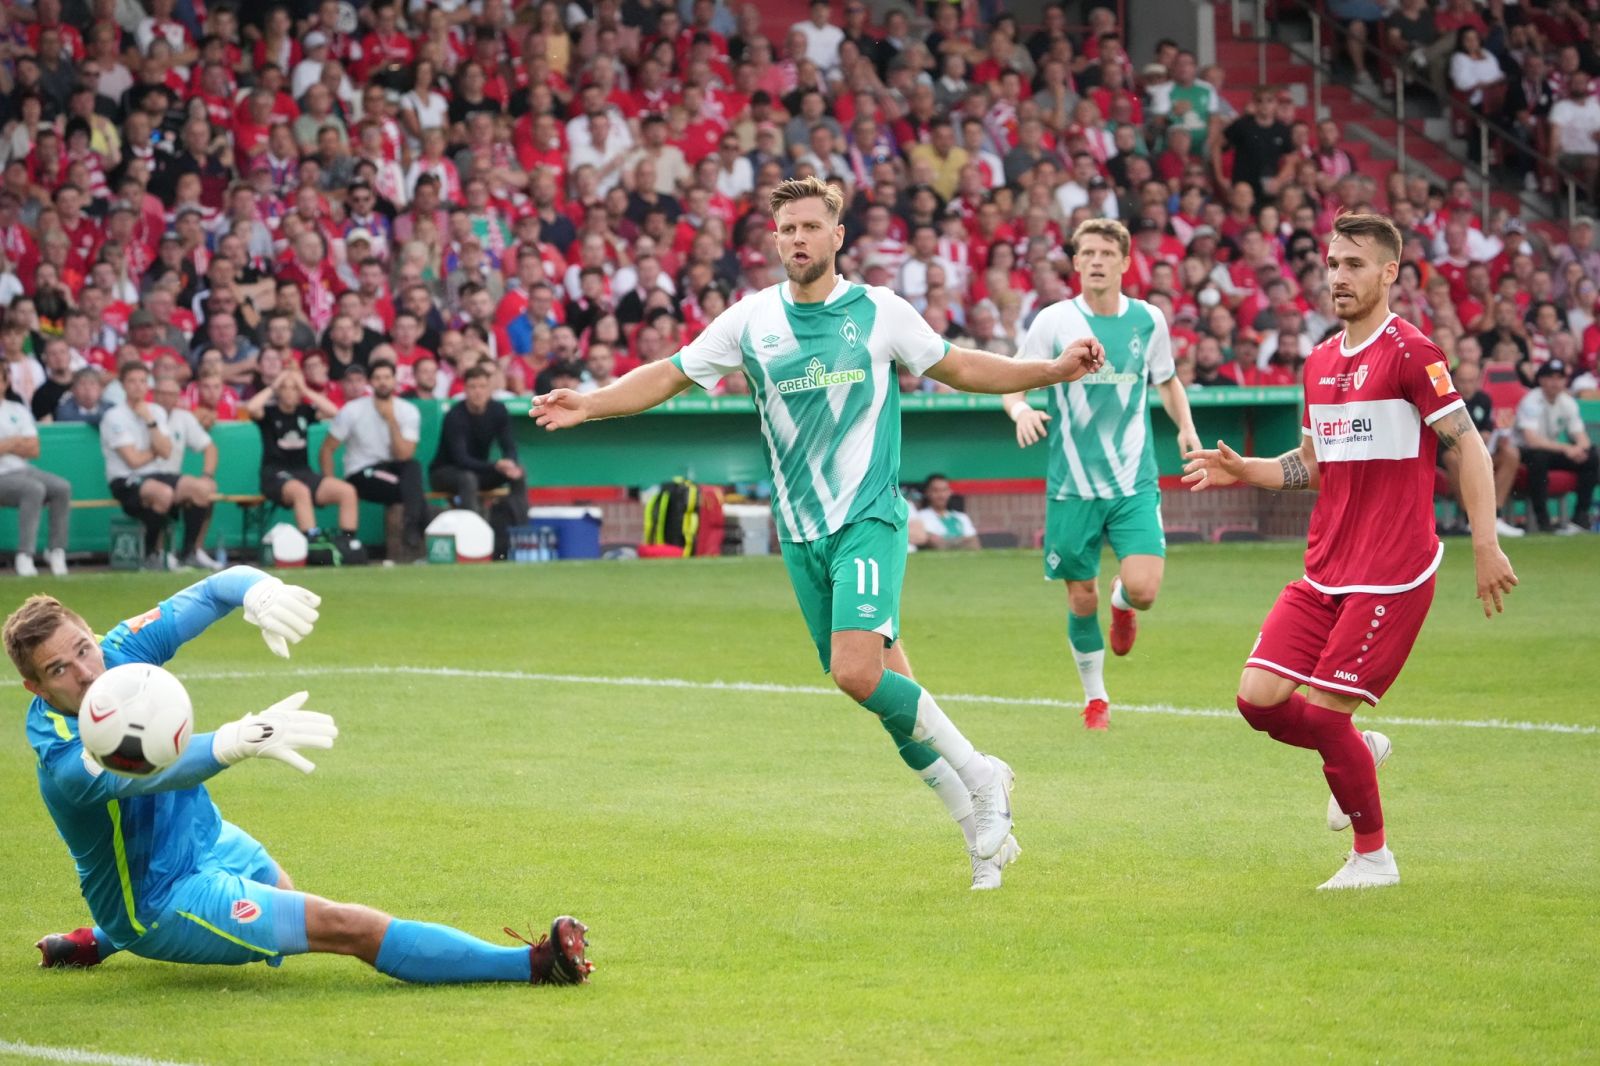 Nhận định, nhận định Werder Bremen vs Stuttgart, 20h30 ngày 13/8 - Bundesliga